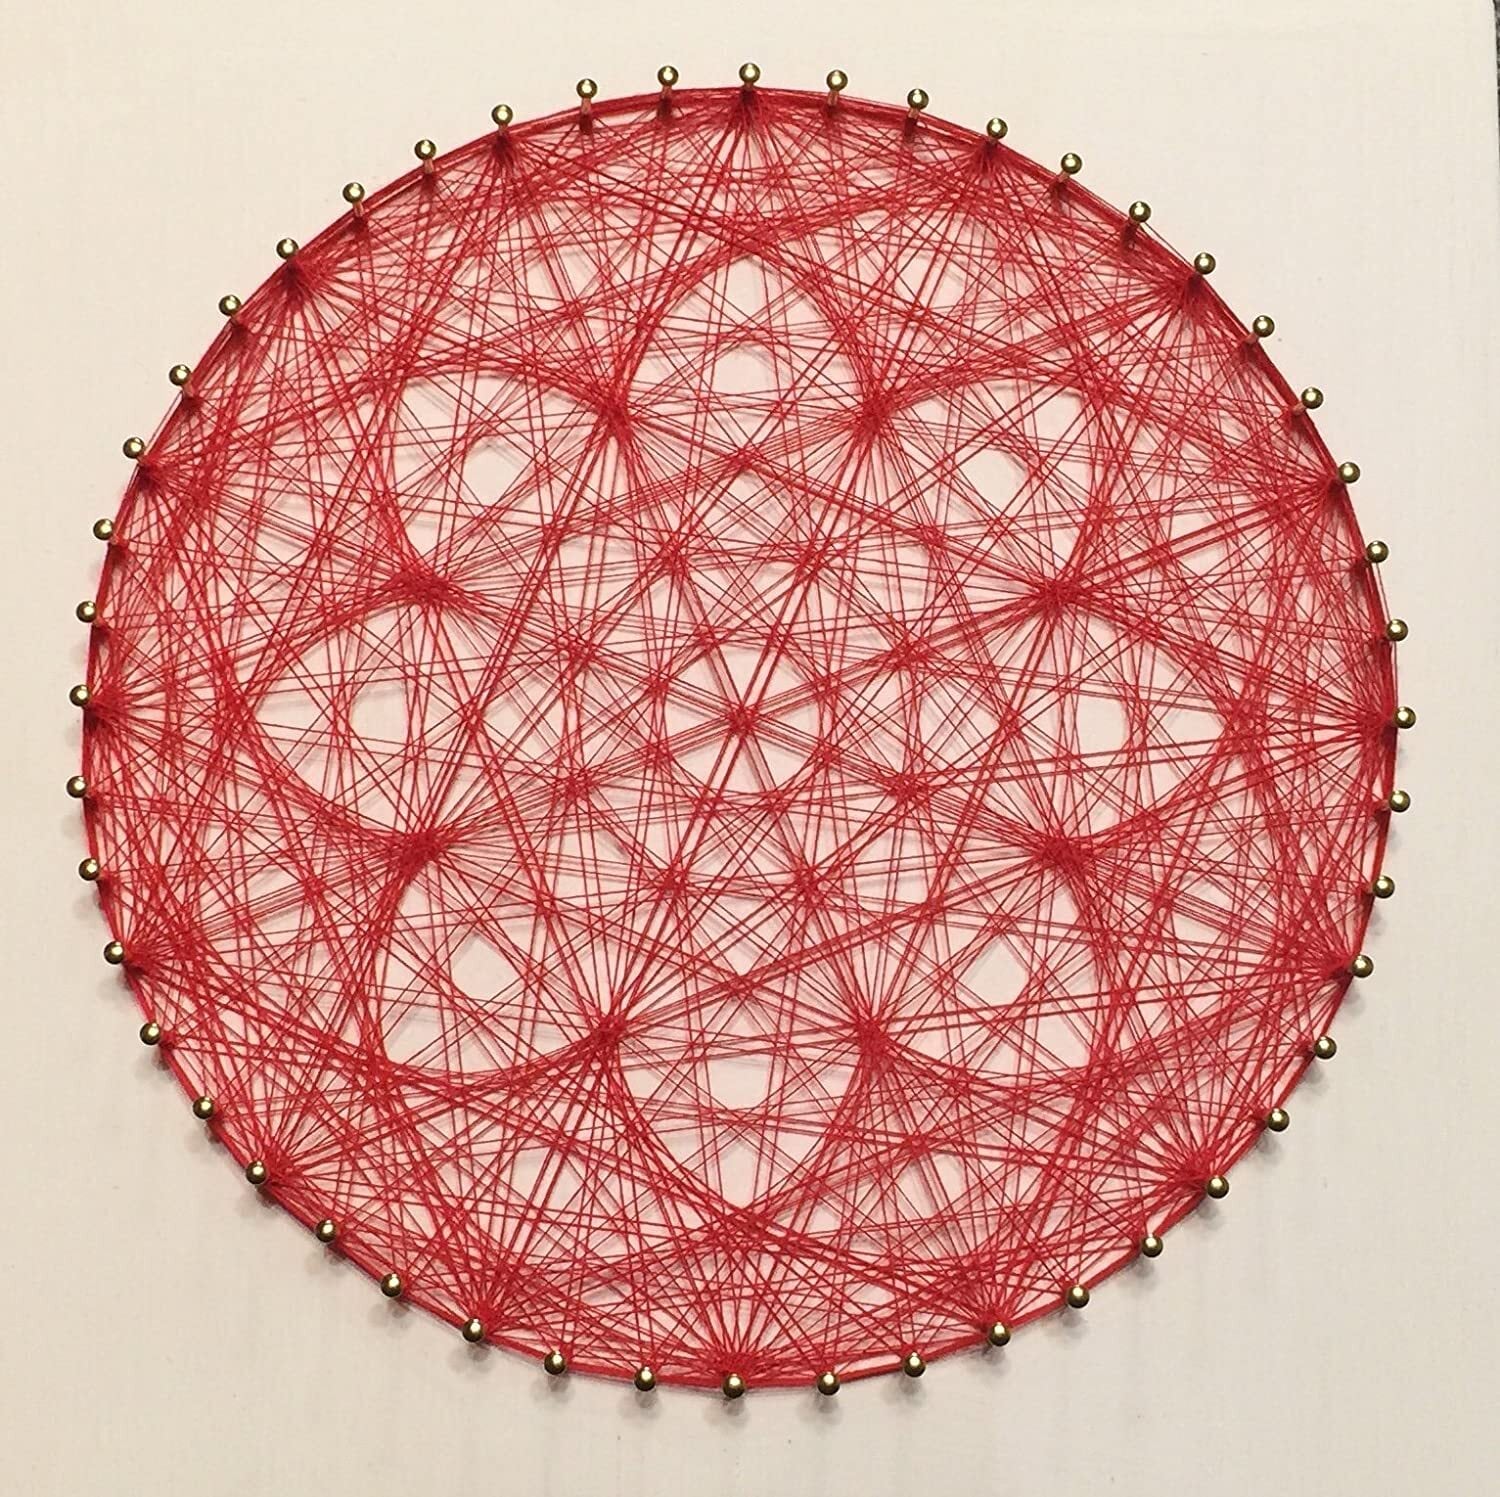 糸かけ花曼荼羅の制作キット | 糸かけアート販売店 UN（アン）string